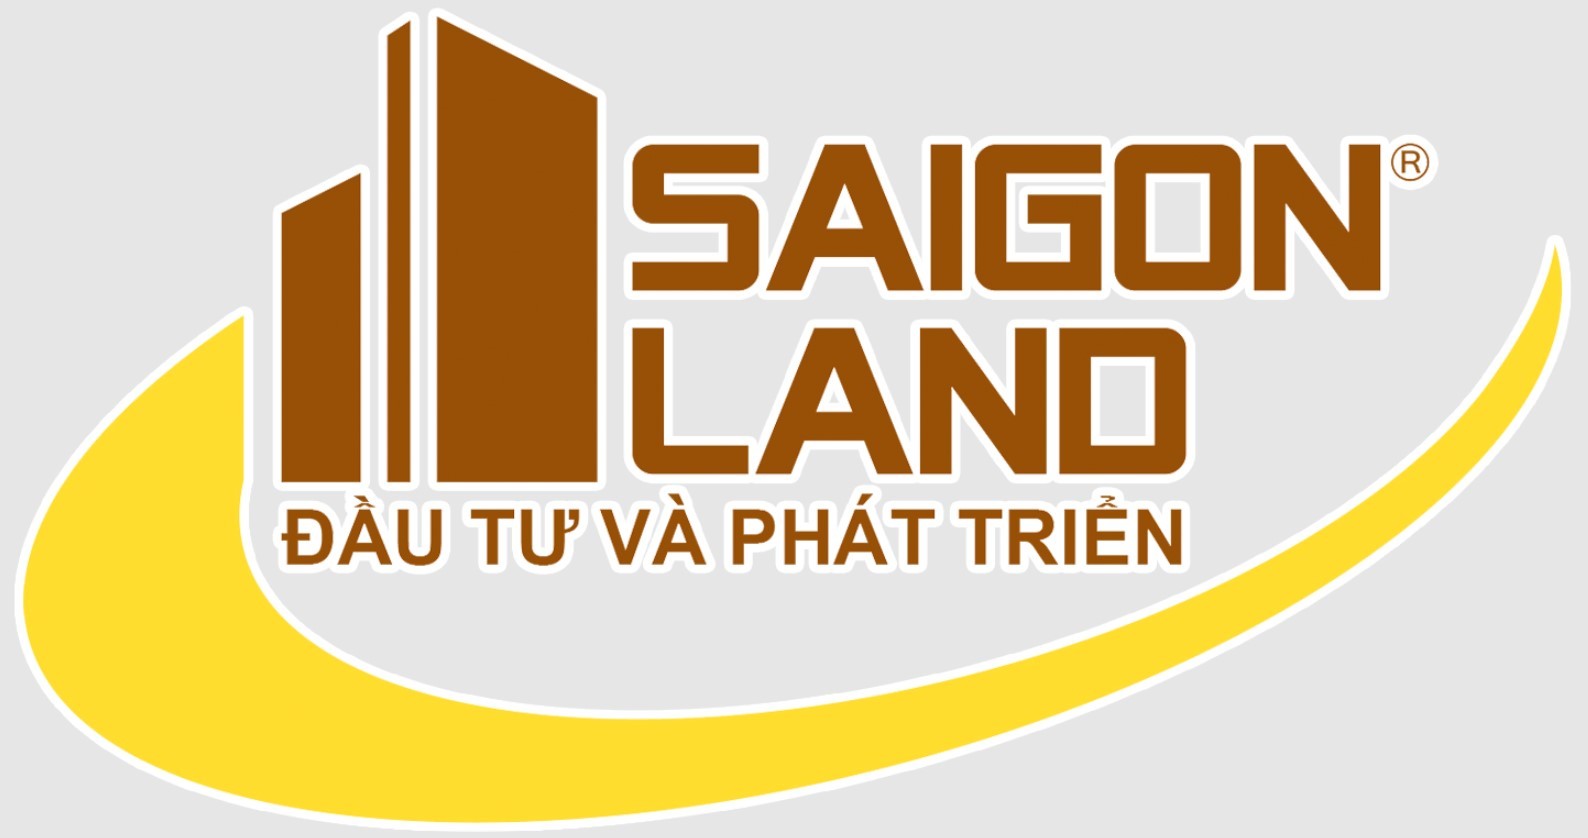 

Công ty Sài Gòn Land - Đầu tư và phát triển
